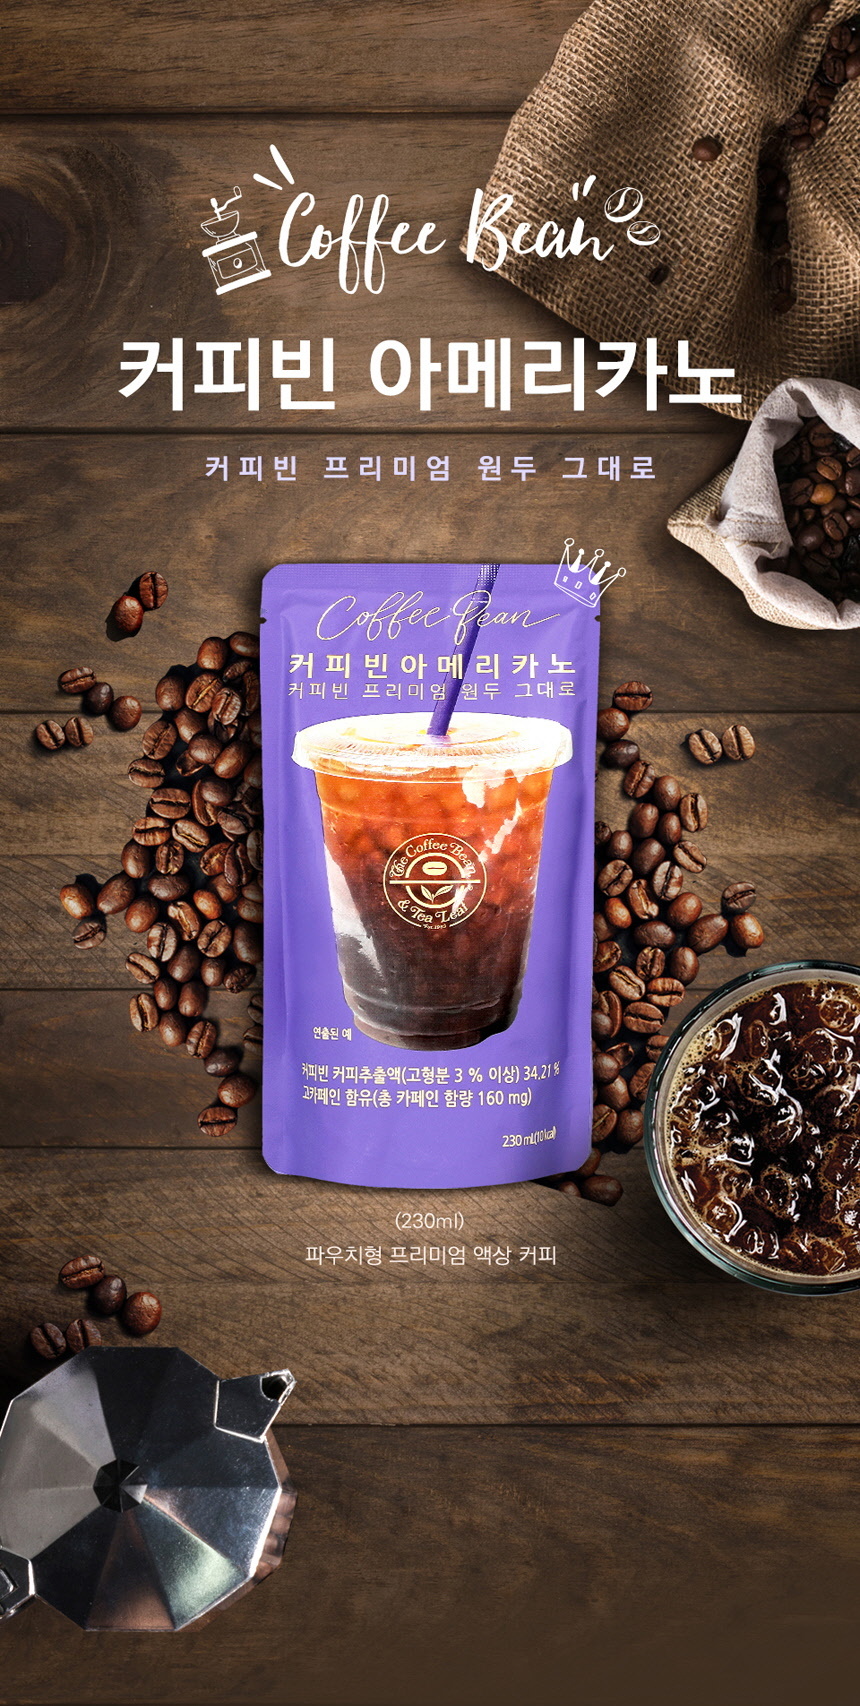 韓國食品-[커피빈] 아메리카노 230ml